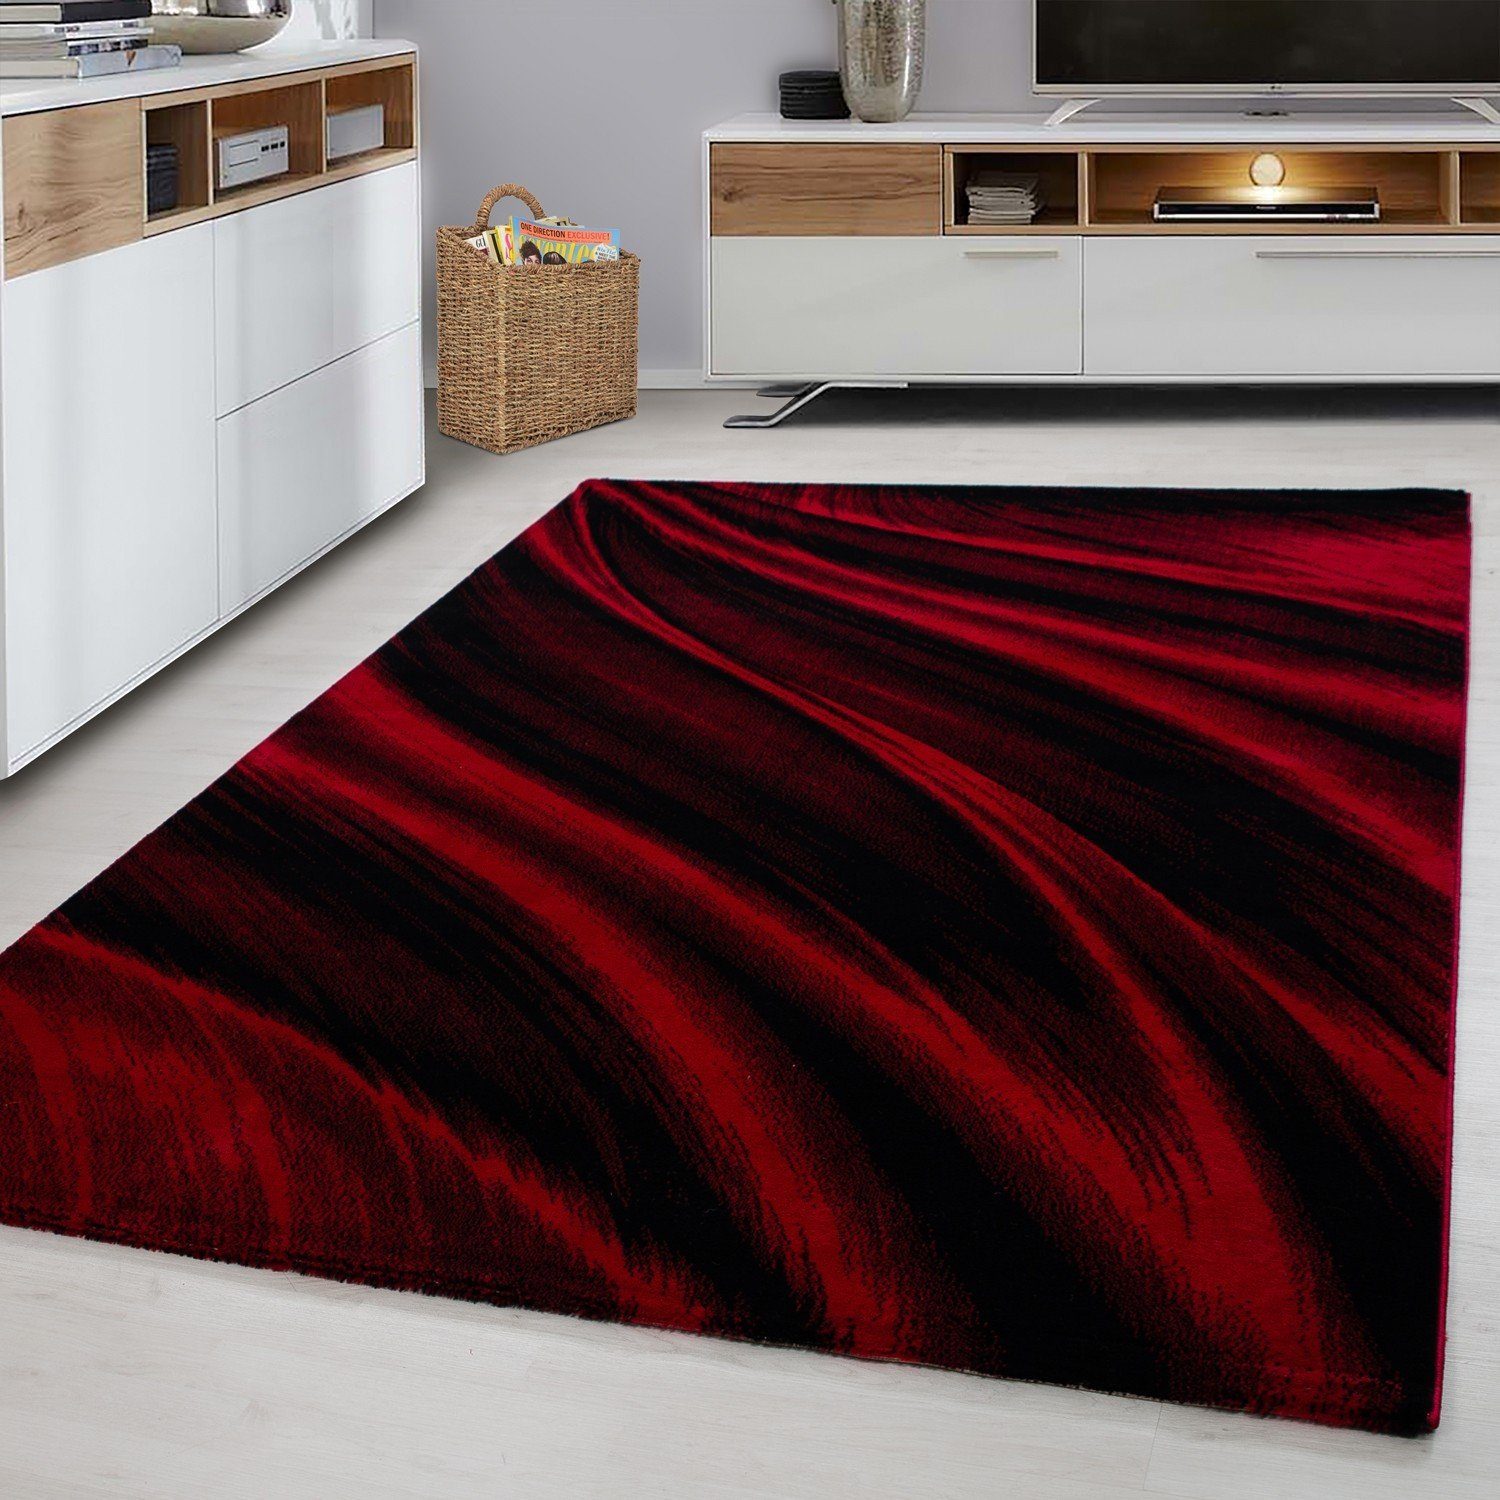 Designteppich Wellenoptik modern Flachflorteppich Kurzflorteppich deko, Miovani Rot